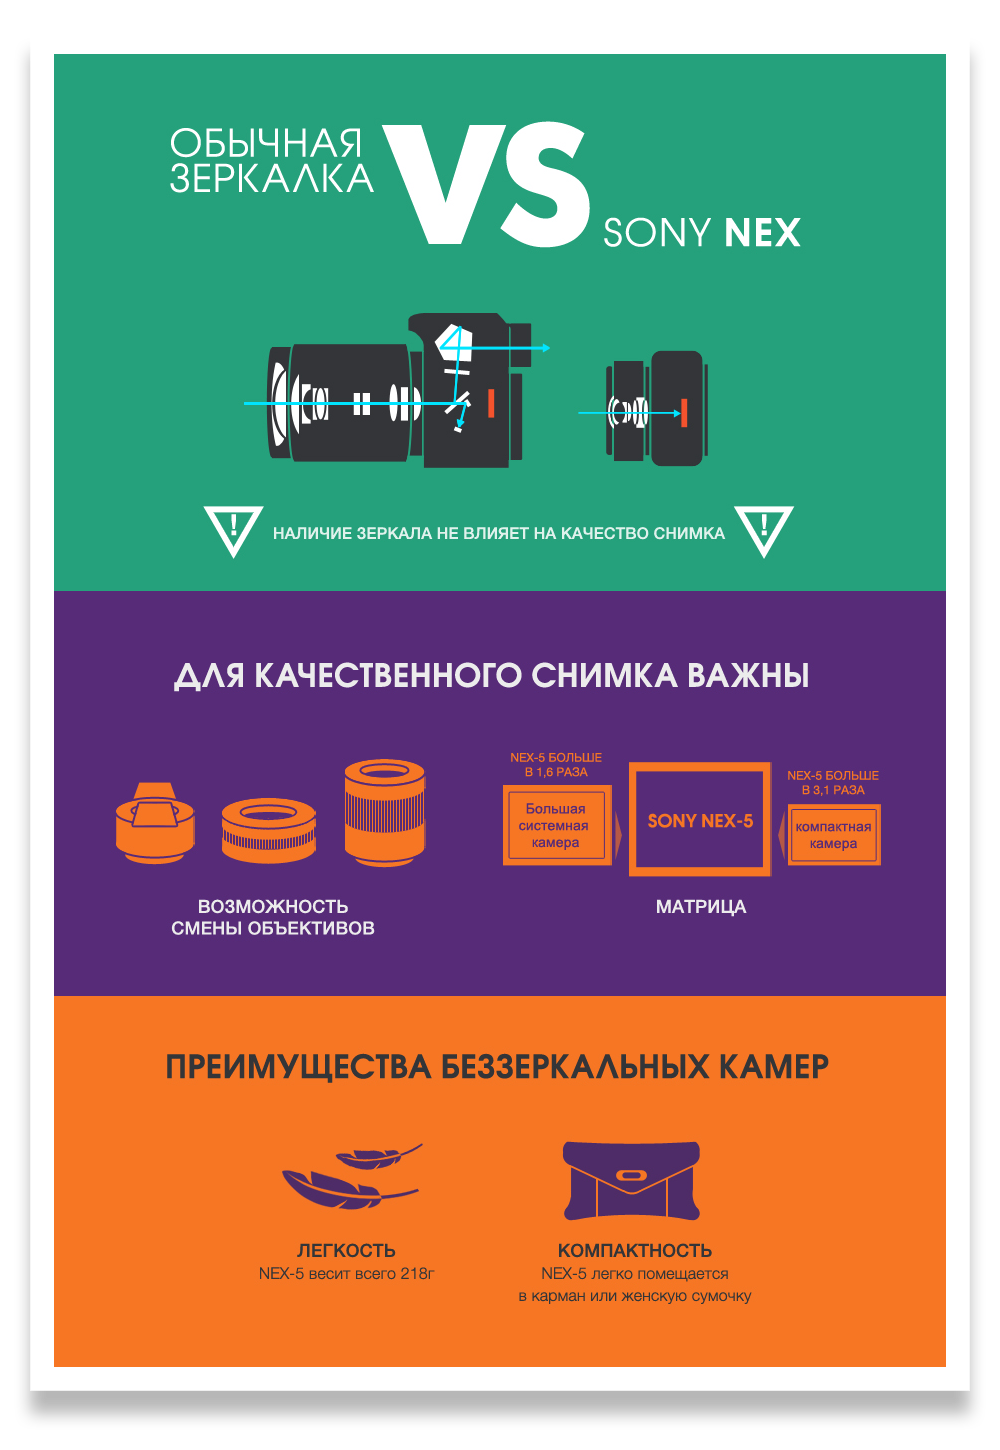 Sony infographic walkman Sony NEX